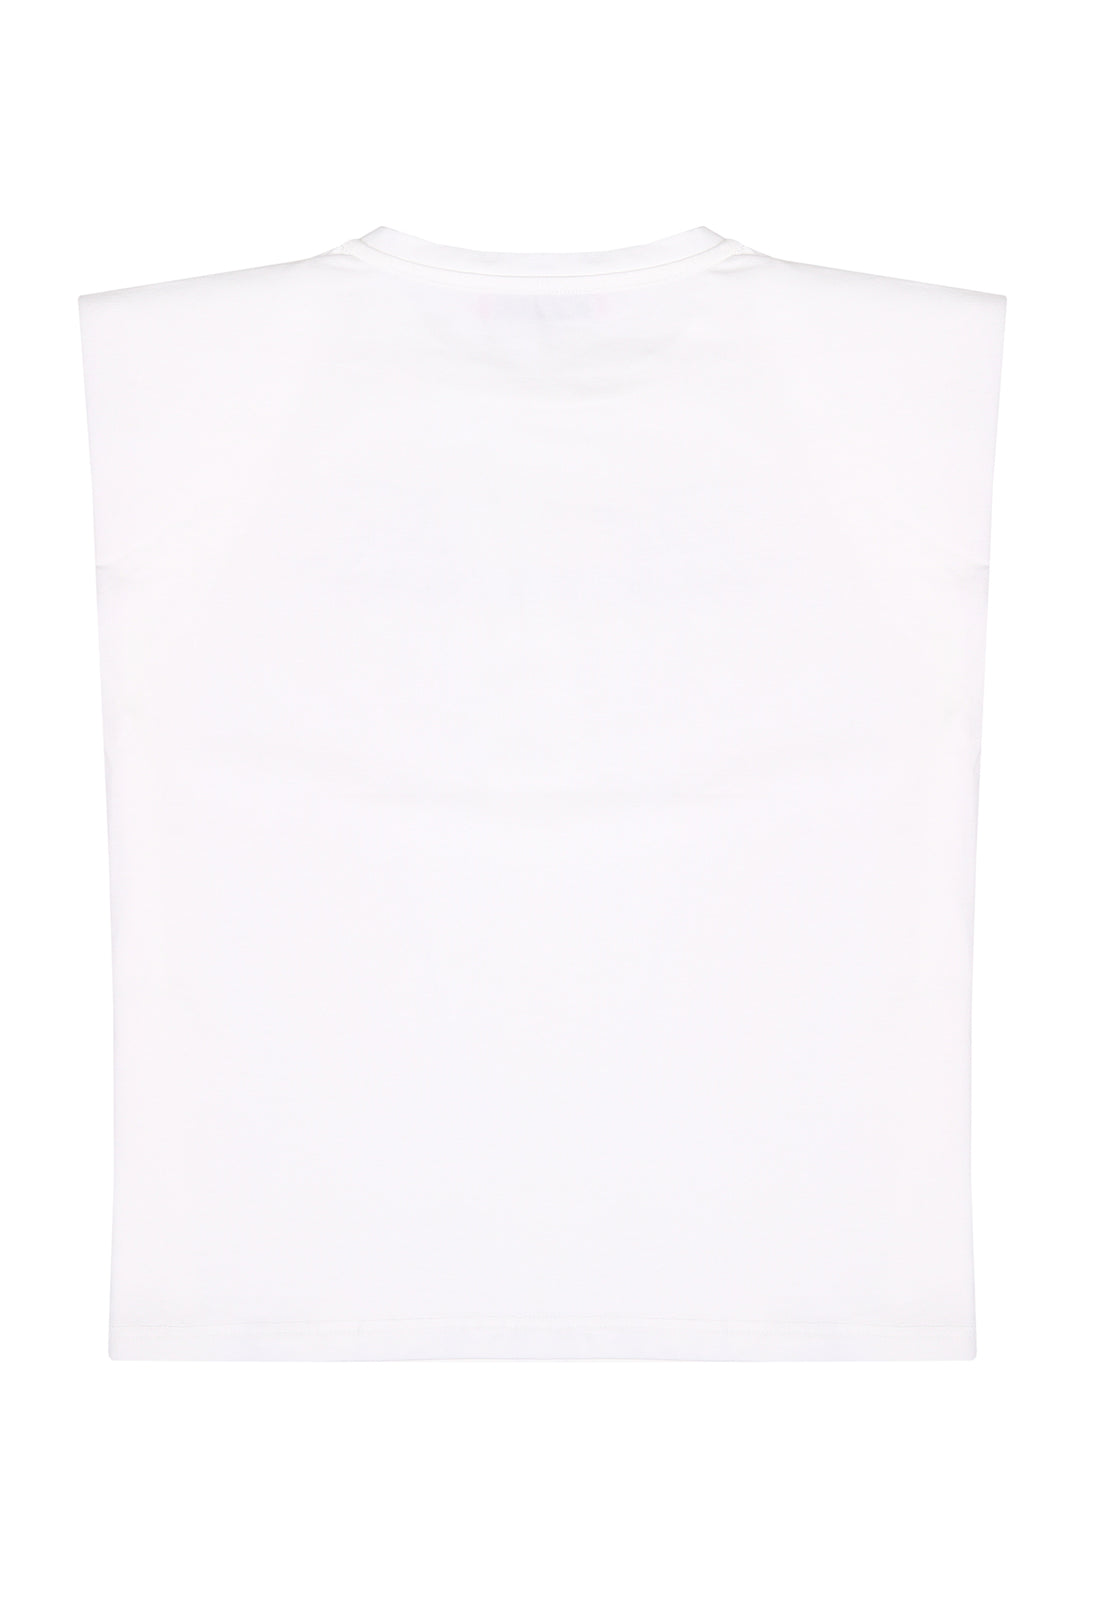 t-shirt materiał biały łączony MISS BLUMA MISS BLUMARINE 123 062J50 123/91c